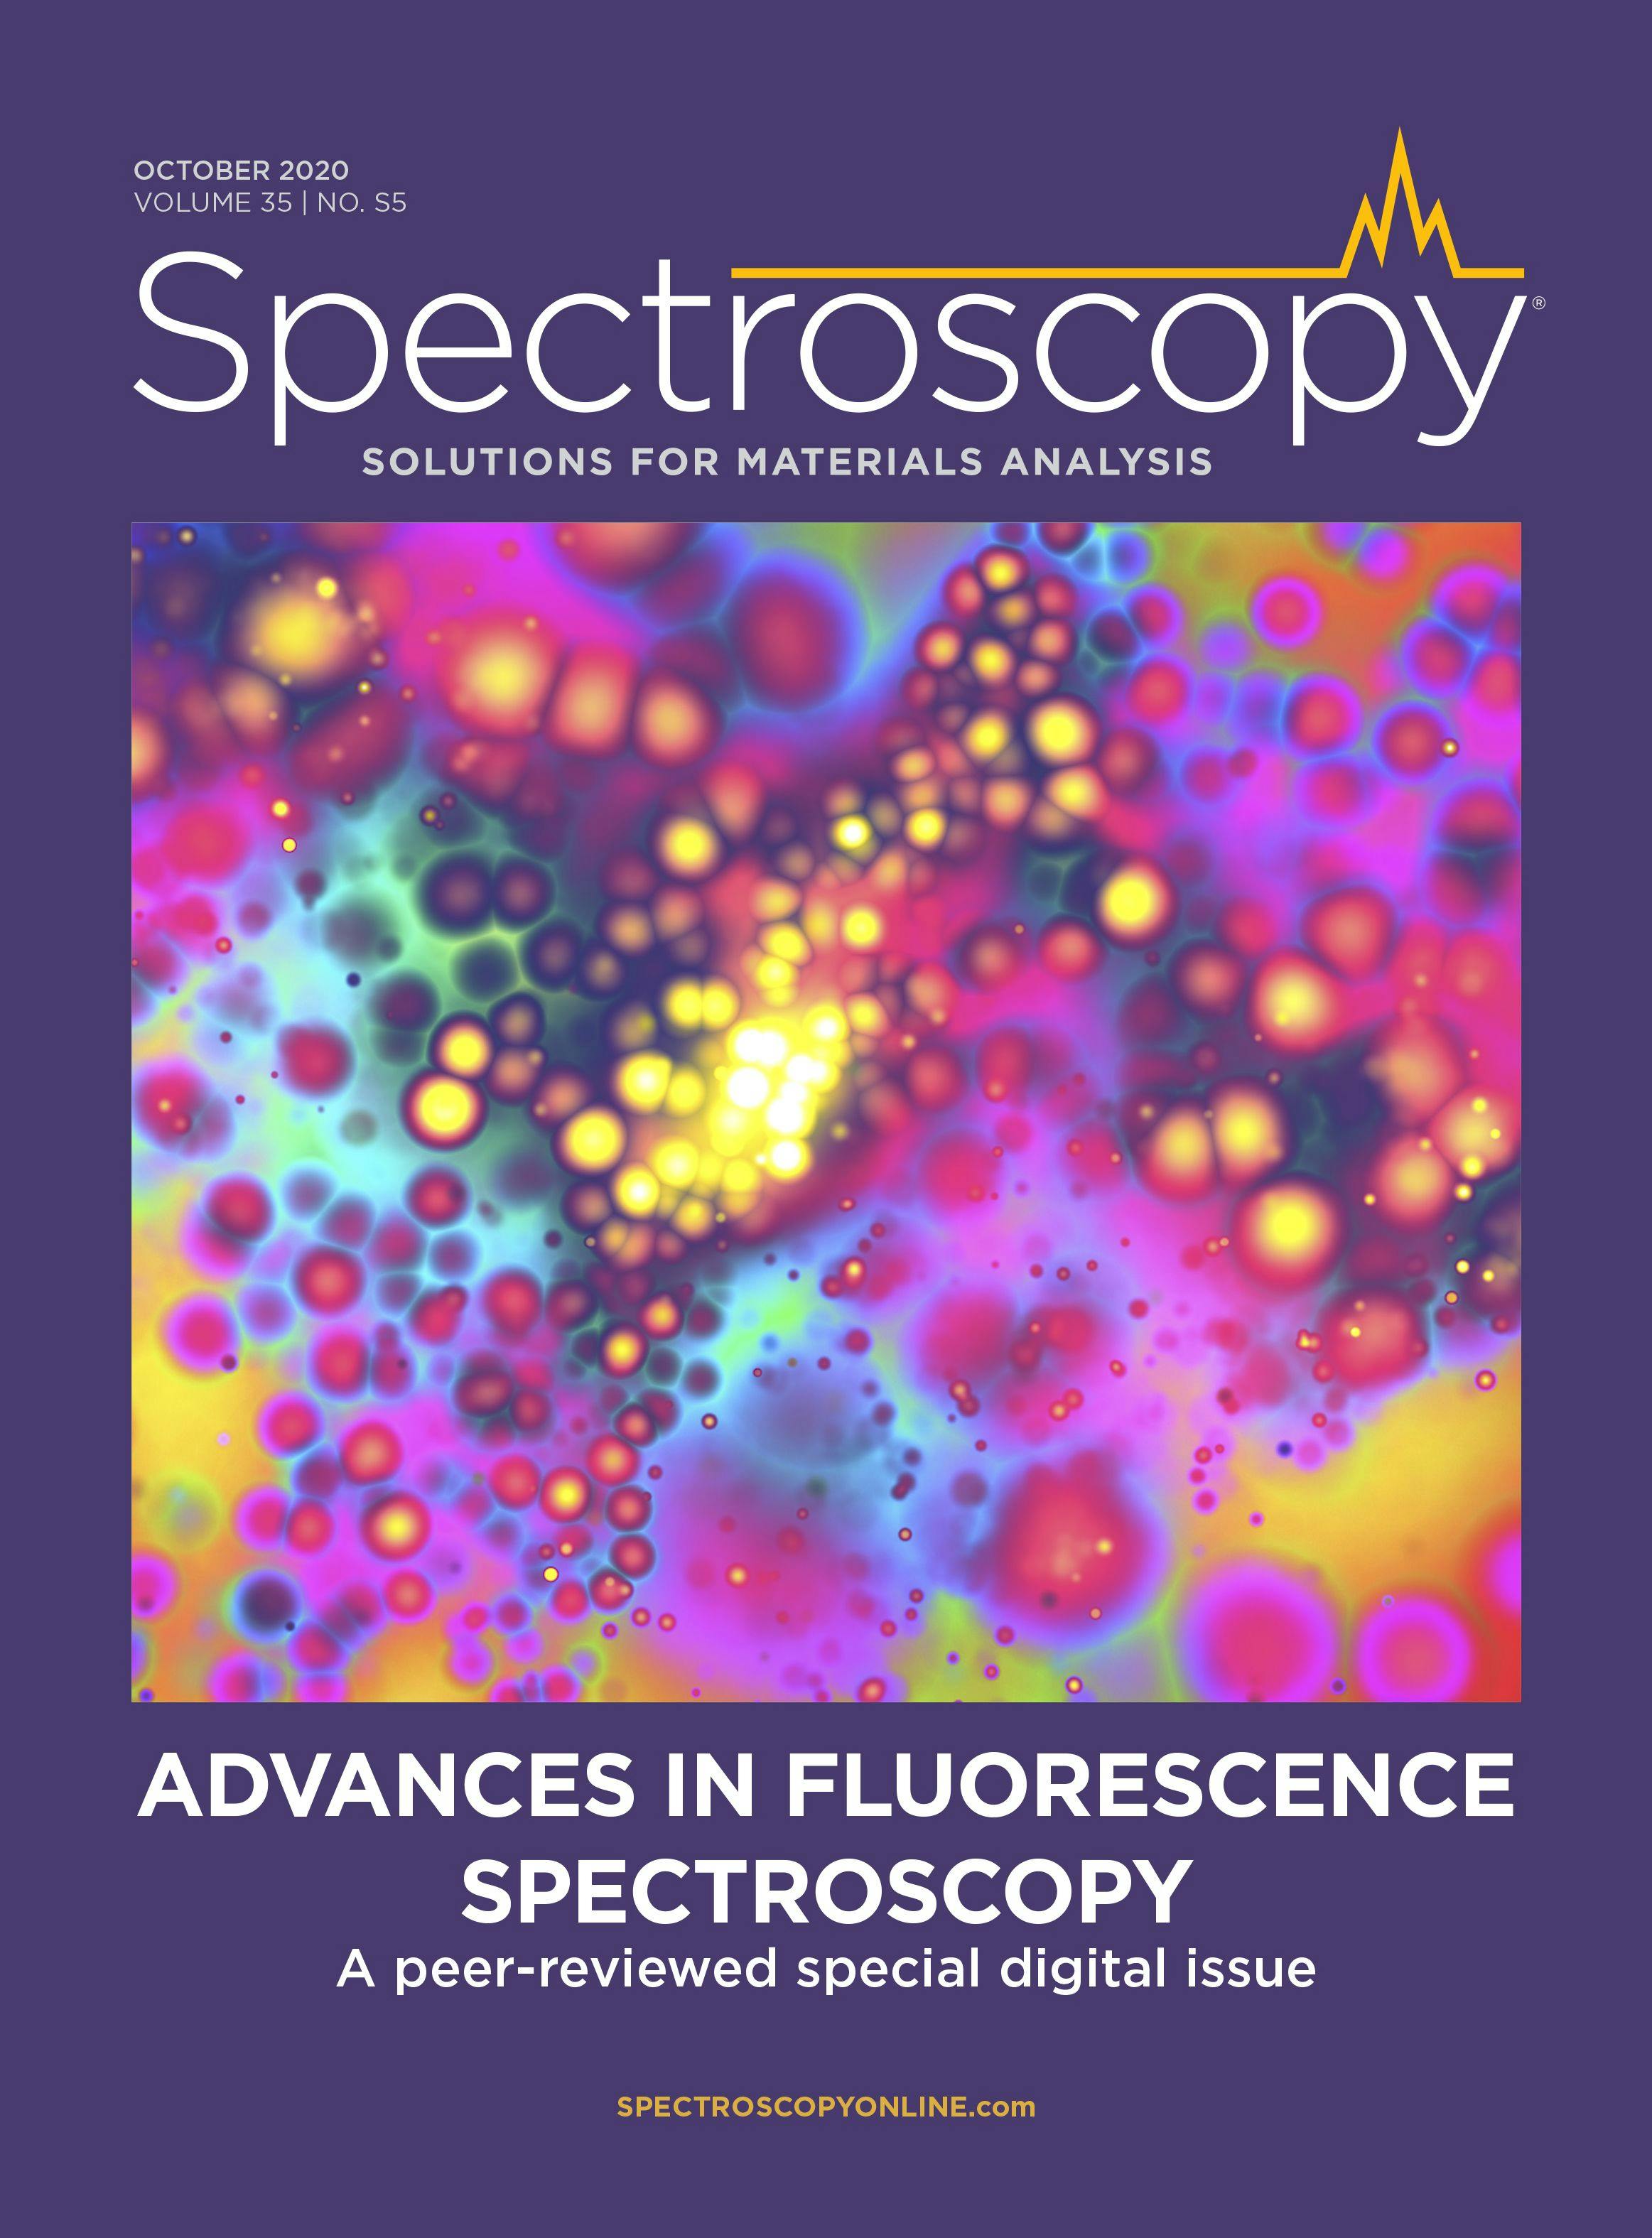 Advances in Fluorescence Spectroscopy